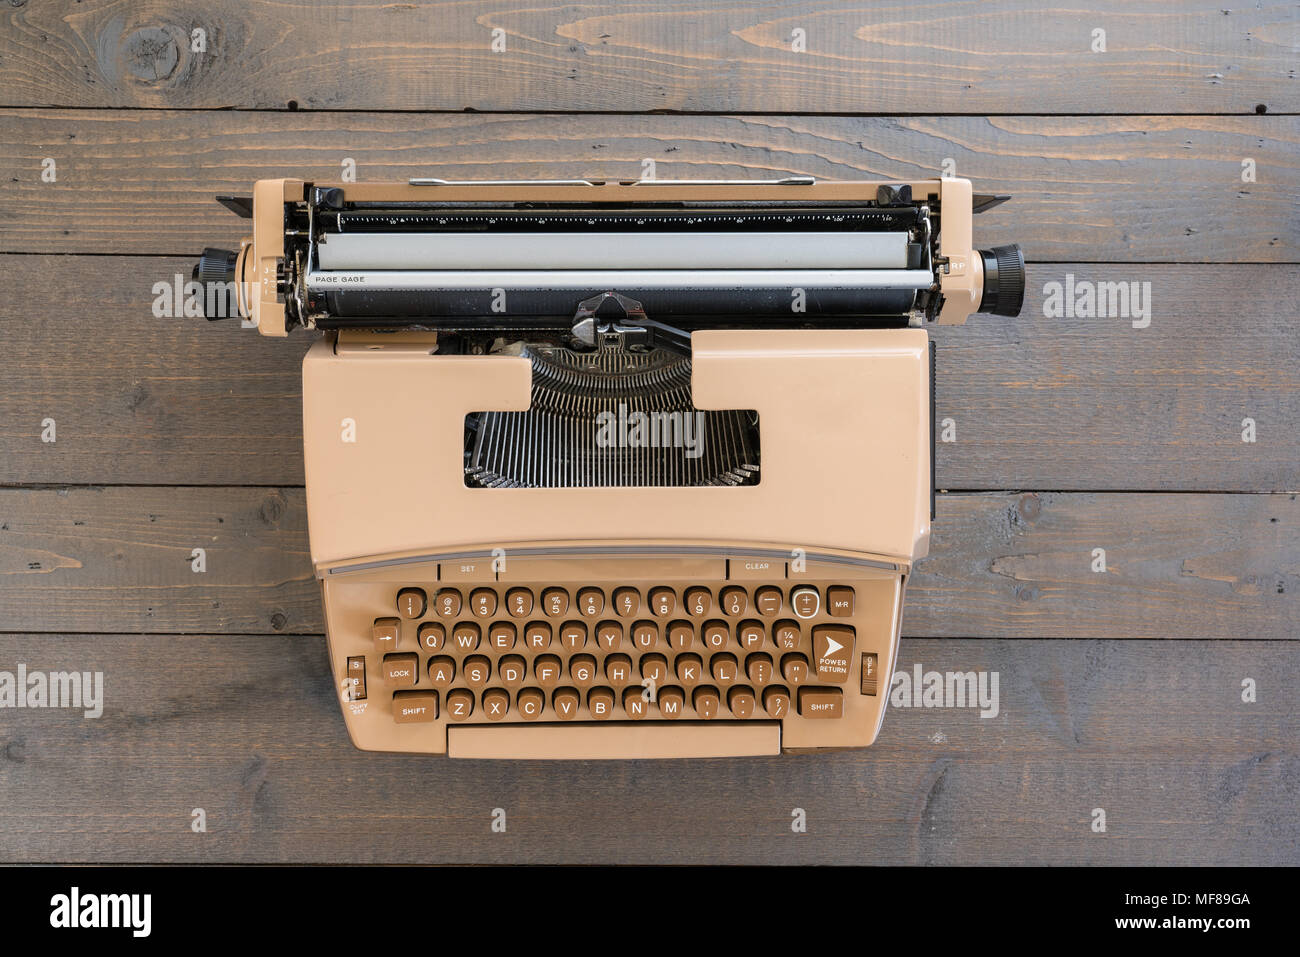 Alte Vintage Schreibmaschine auf einem Holz Hintergrund Stockfotografie -  Alamy